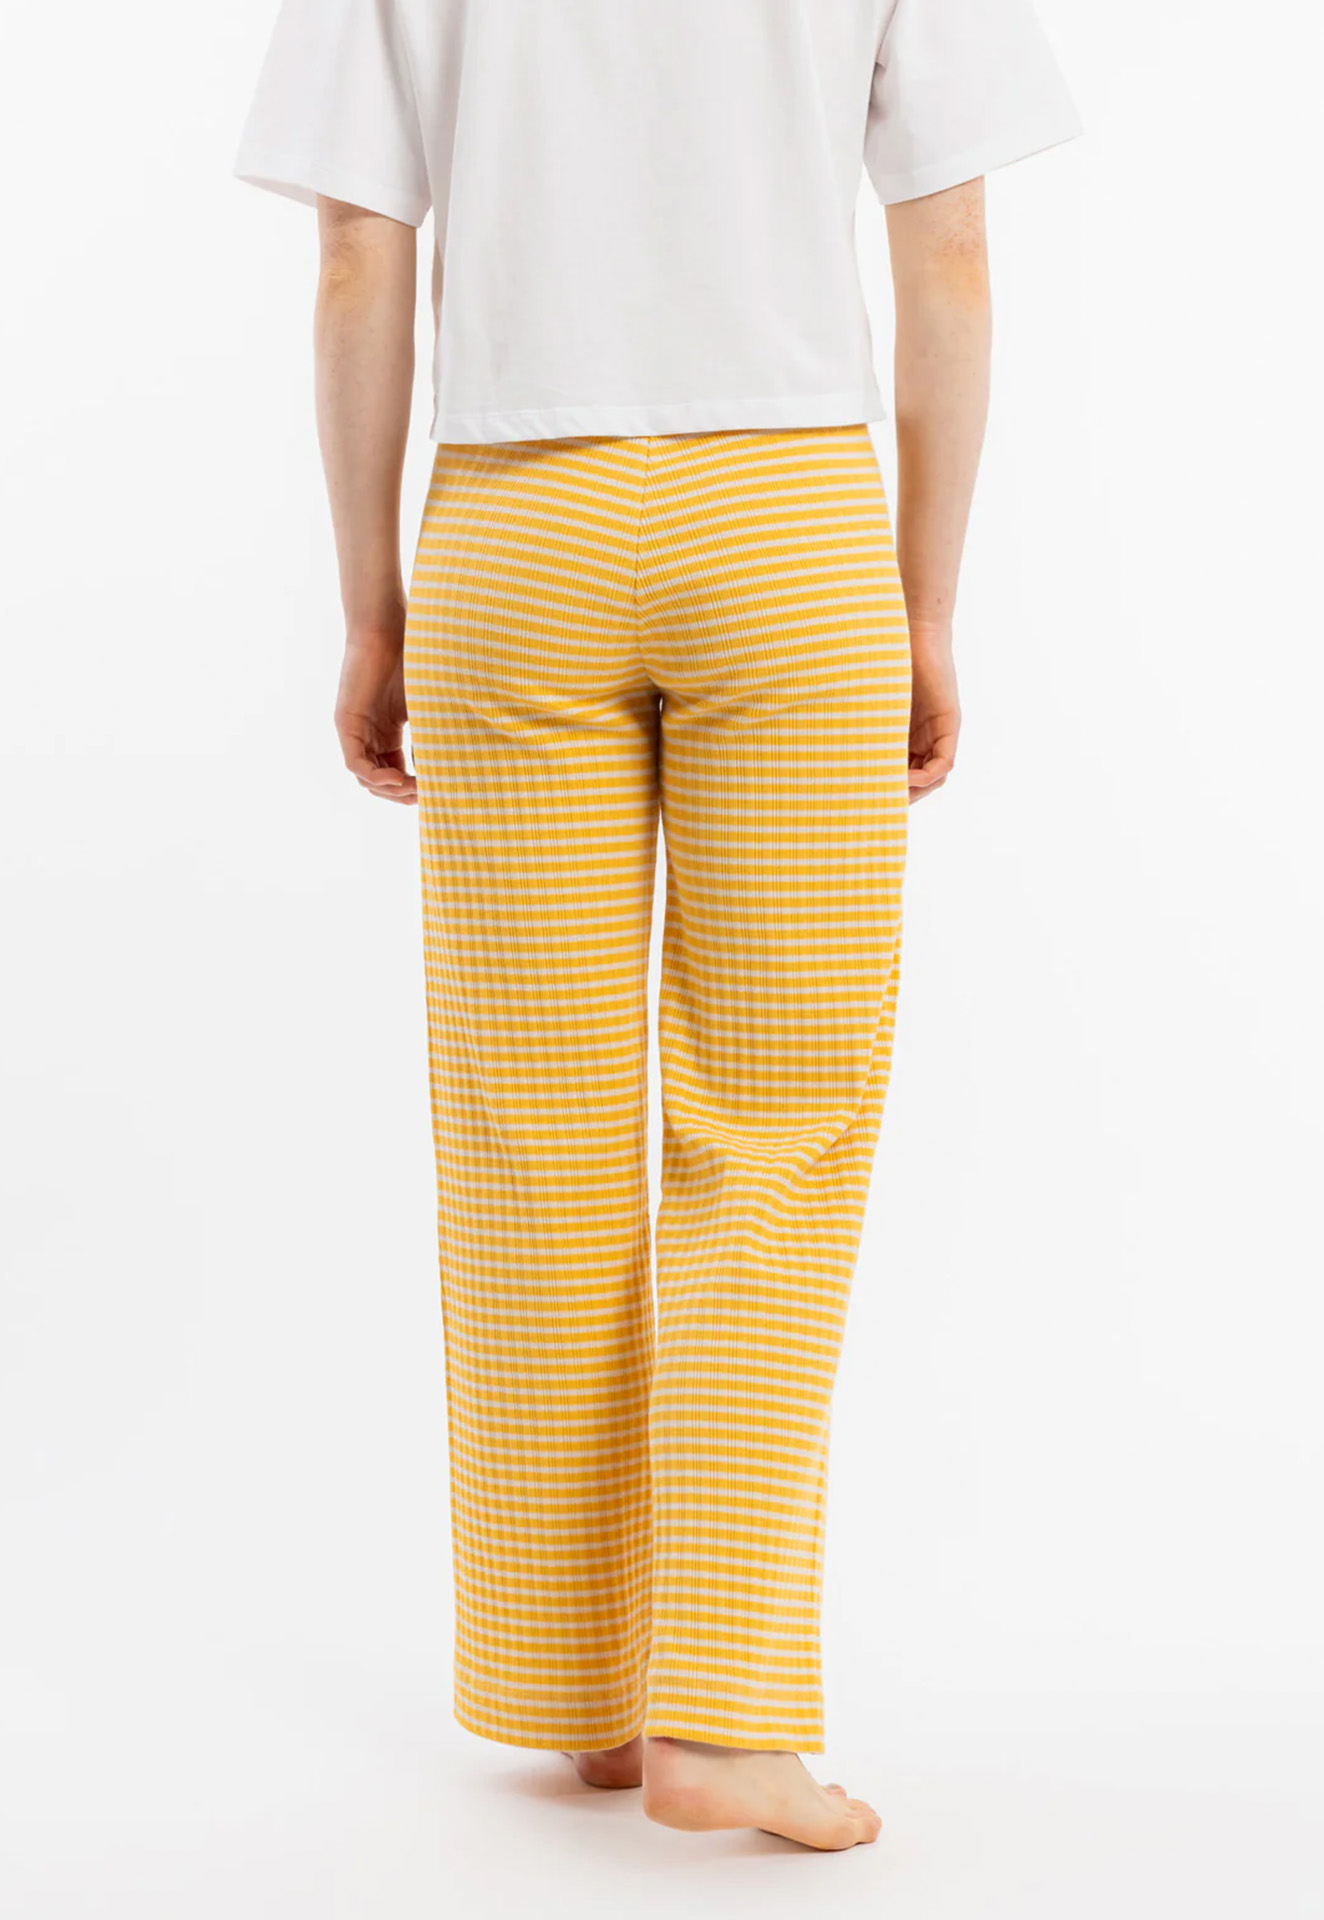 ROTHOLZ Ribbed Lounge Pant yellow/sand stripe M